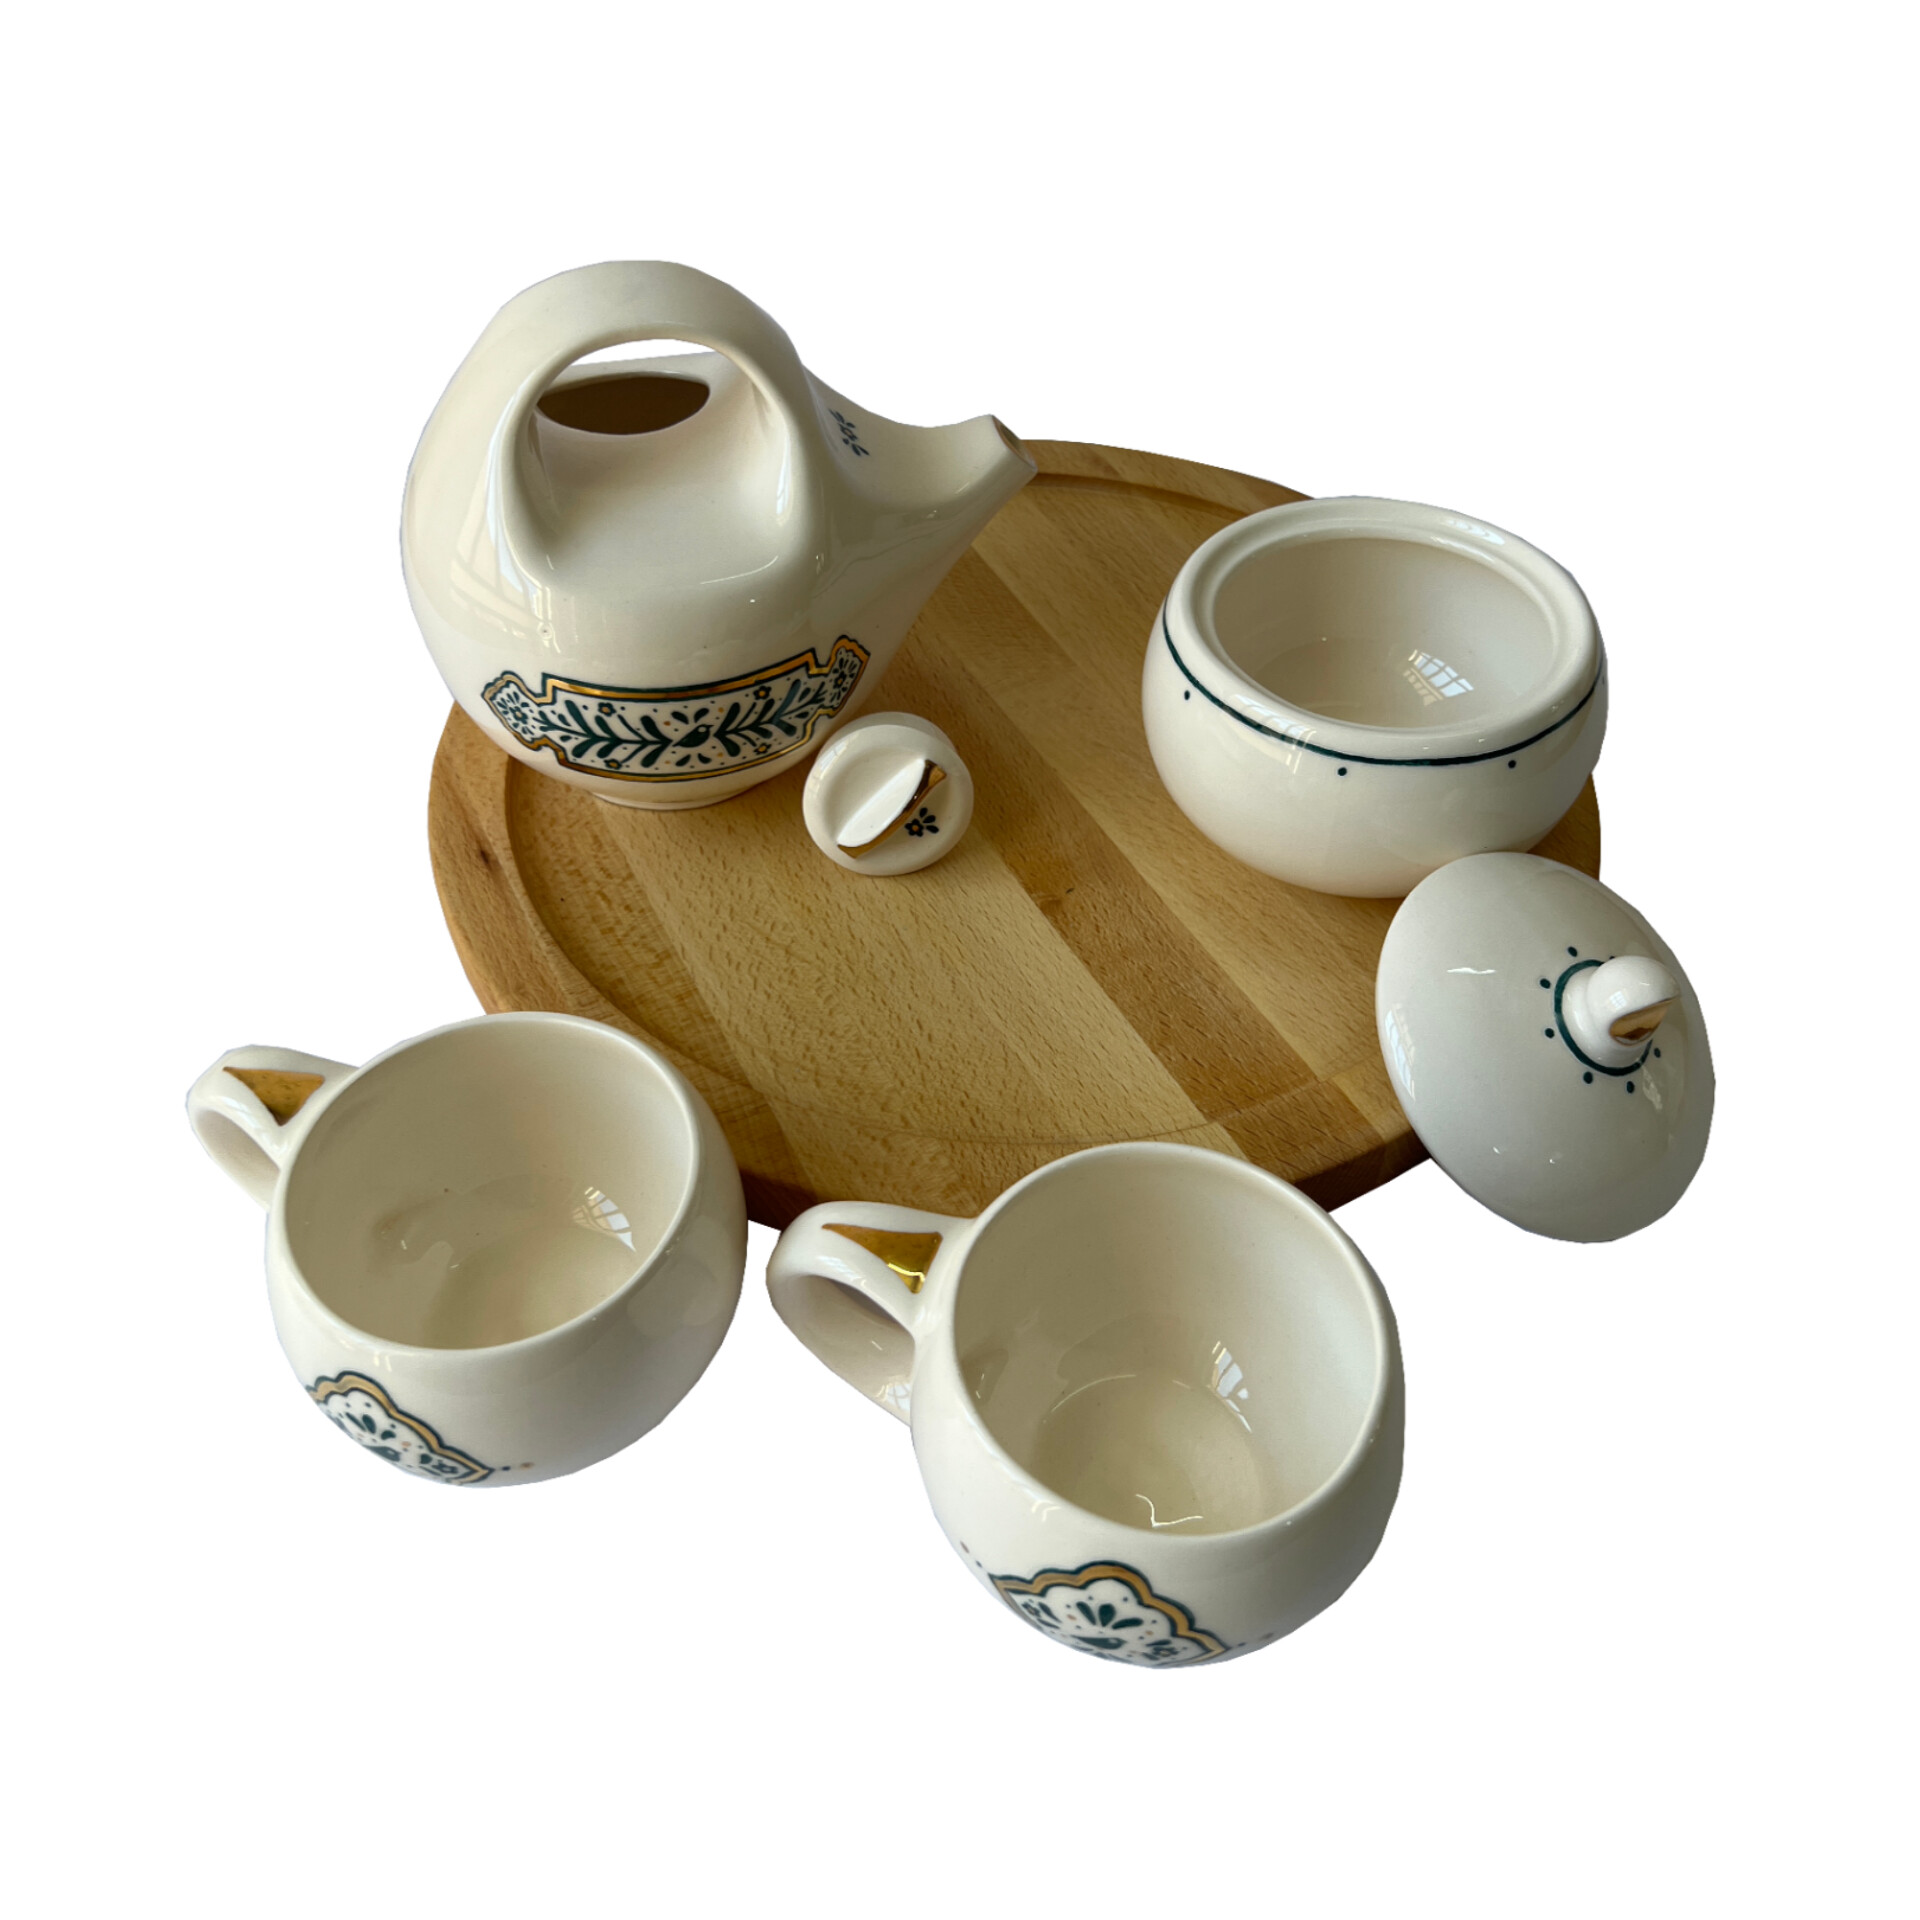 سرویس چای خوری 5 پارچه سرامیکی طرح ماه منیر به همراه سینی چوبی